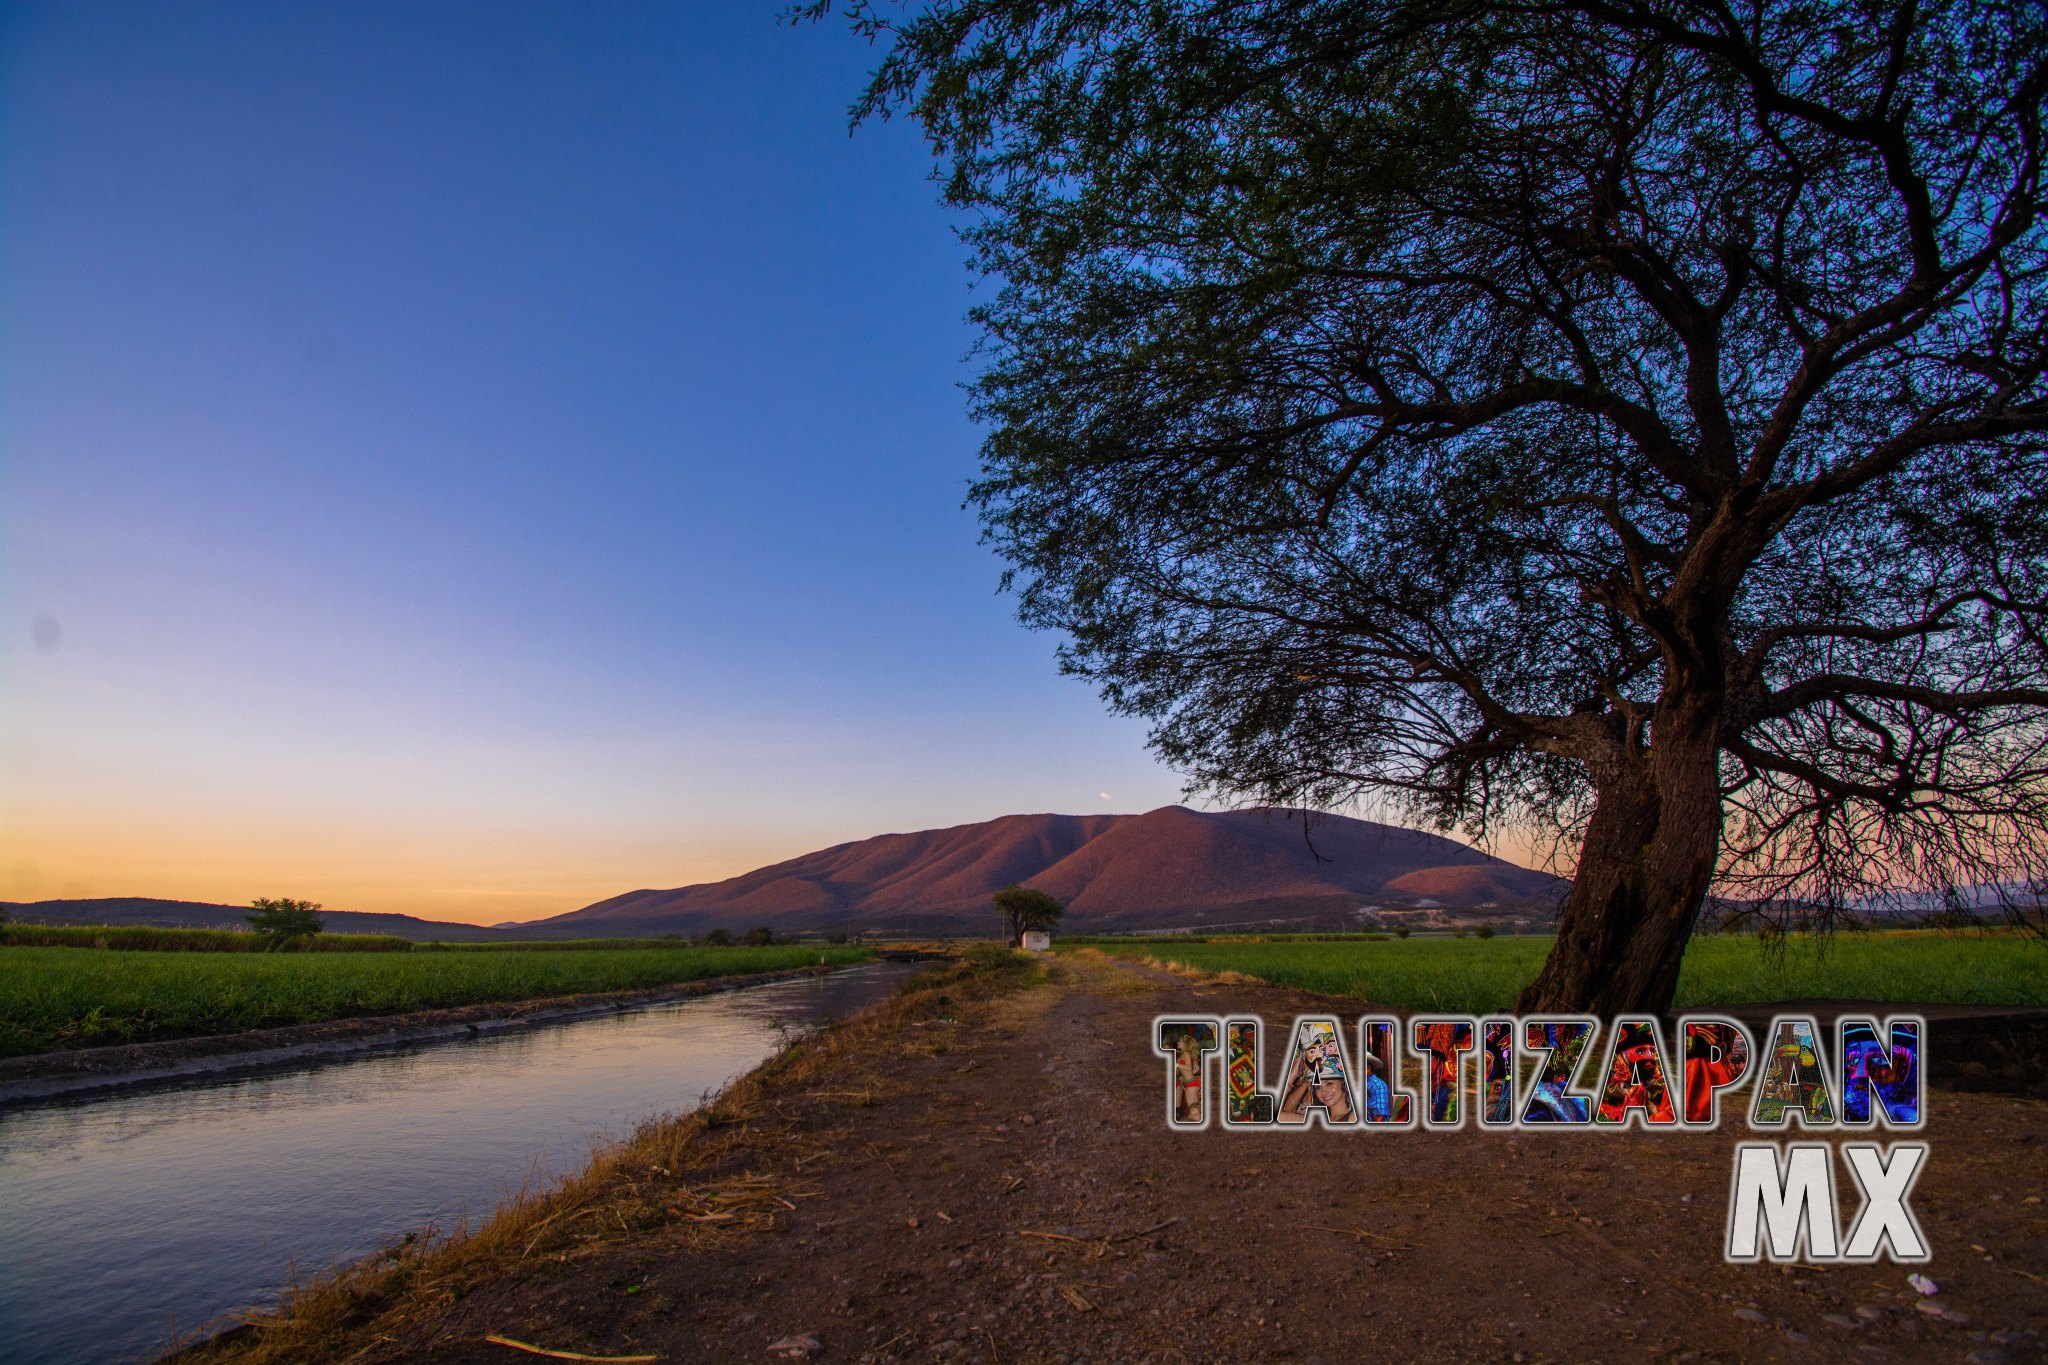 Bello paisaje del amanecer en Tlaltizapán en el canal